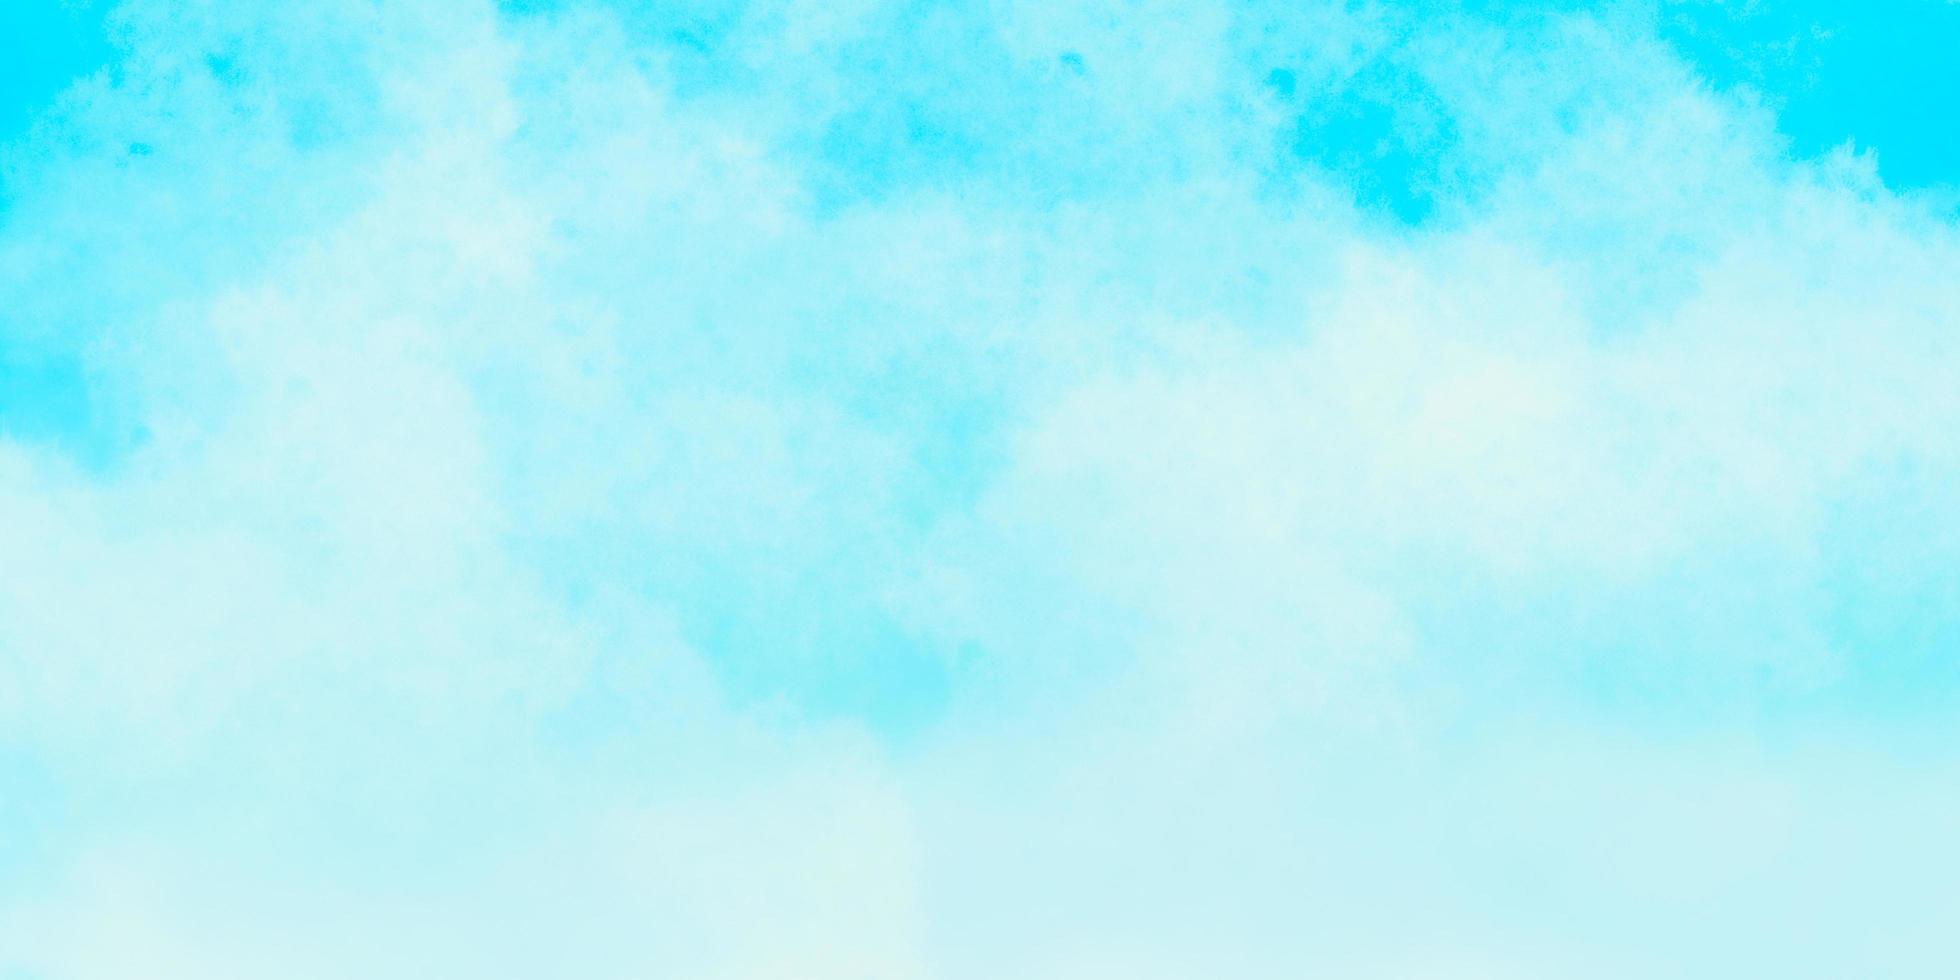 abstracte blauwe achtergrond met aquarelverf foto